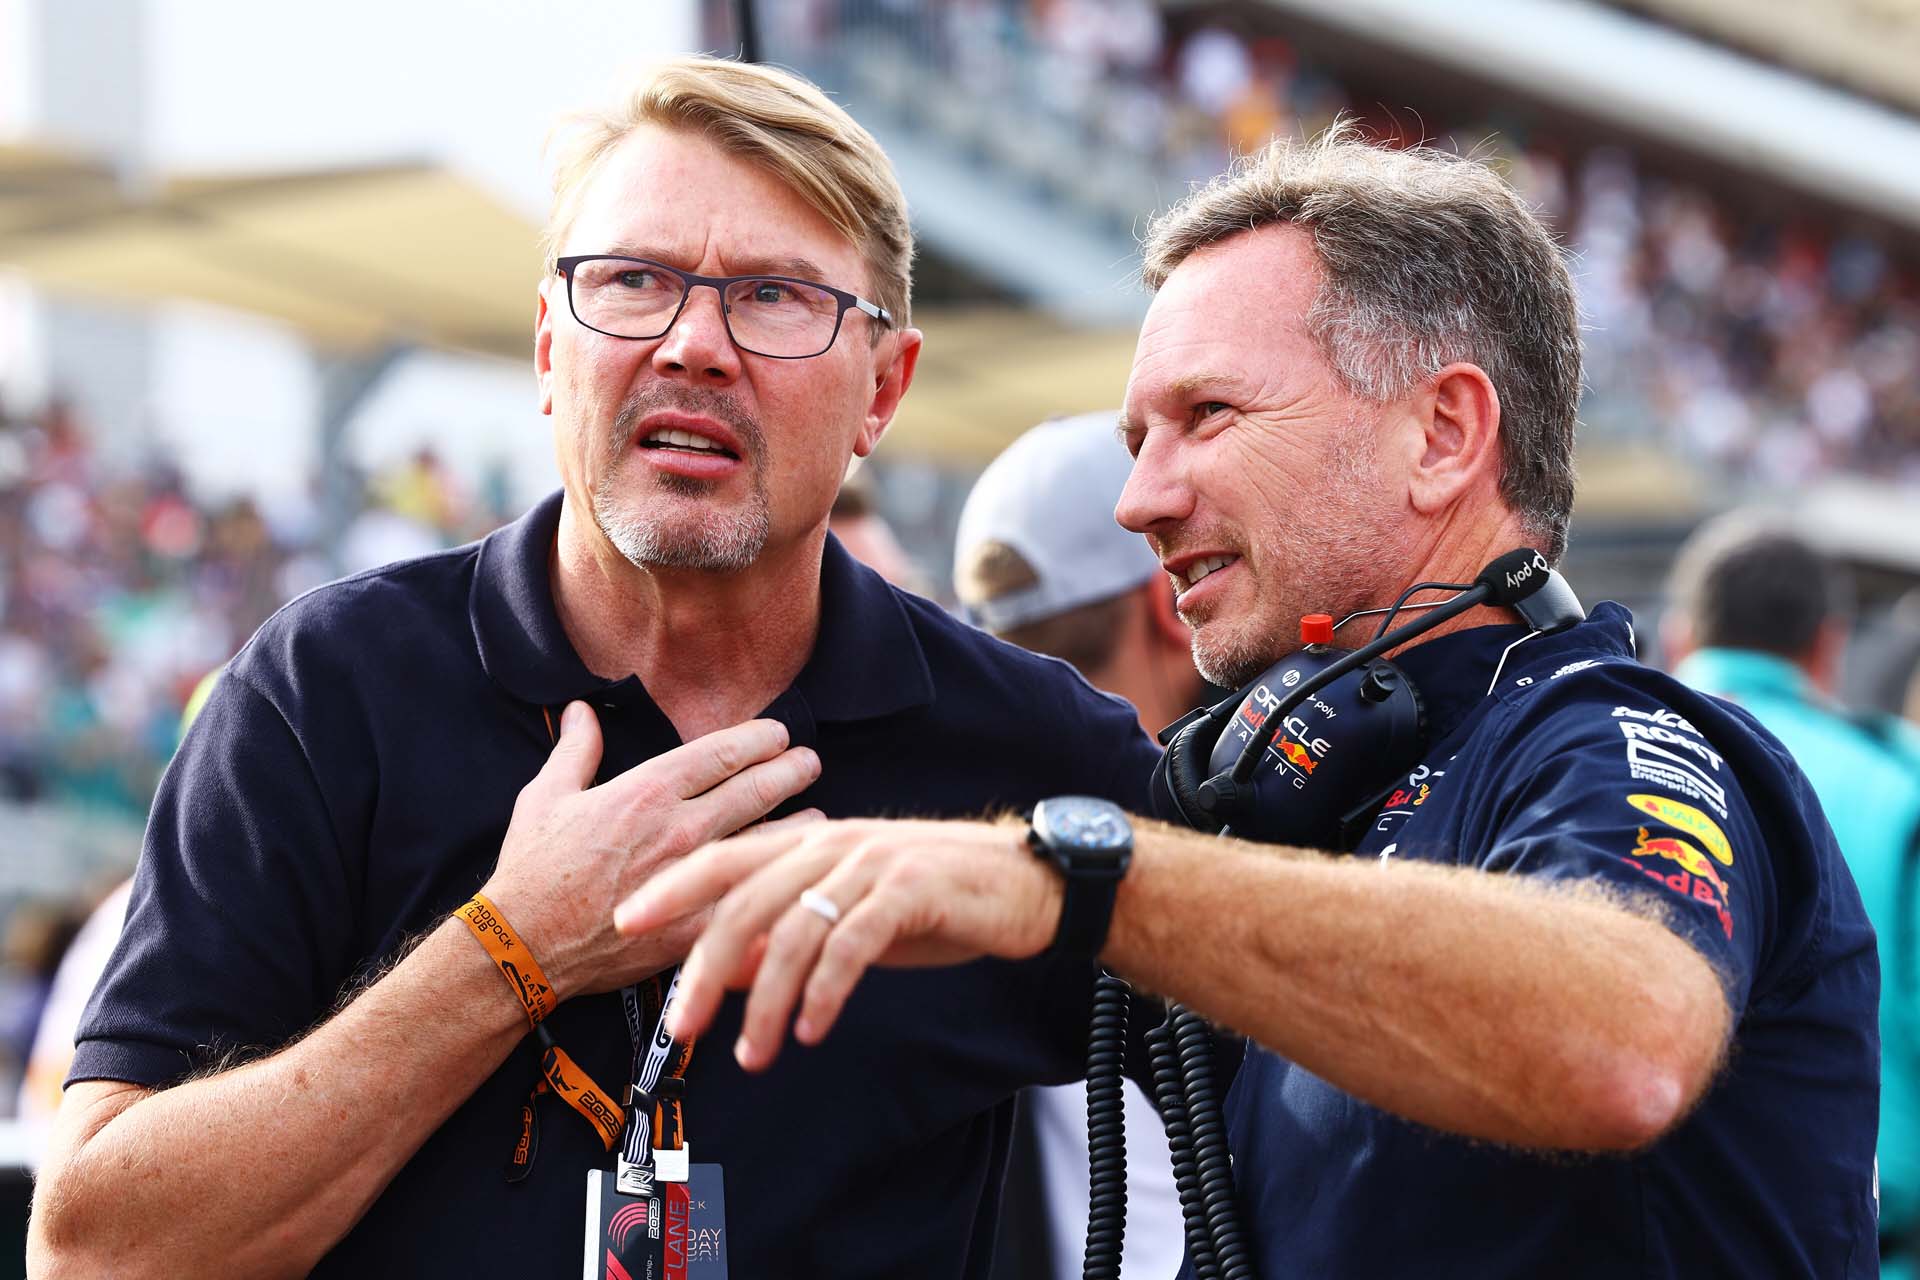 Az F1-es legendákról is lemaradt volna: Häkkinen a luxusról és az elszalasztott lehetőségekről